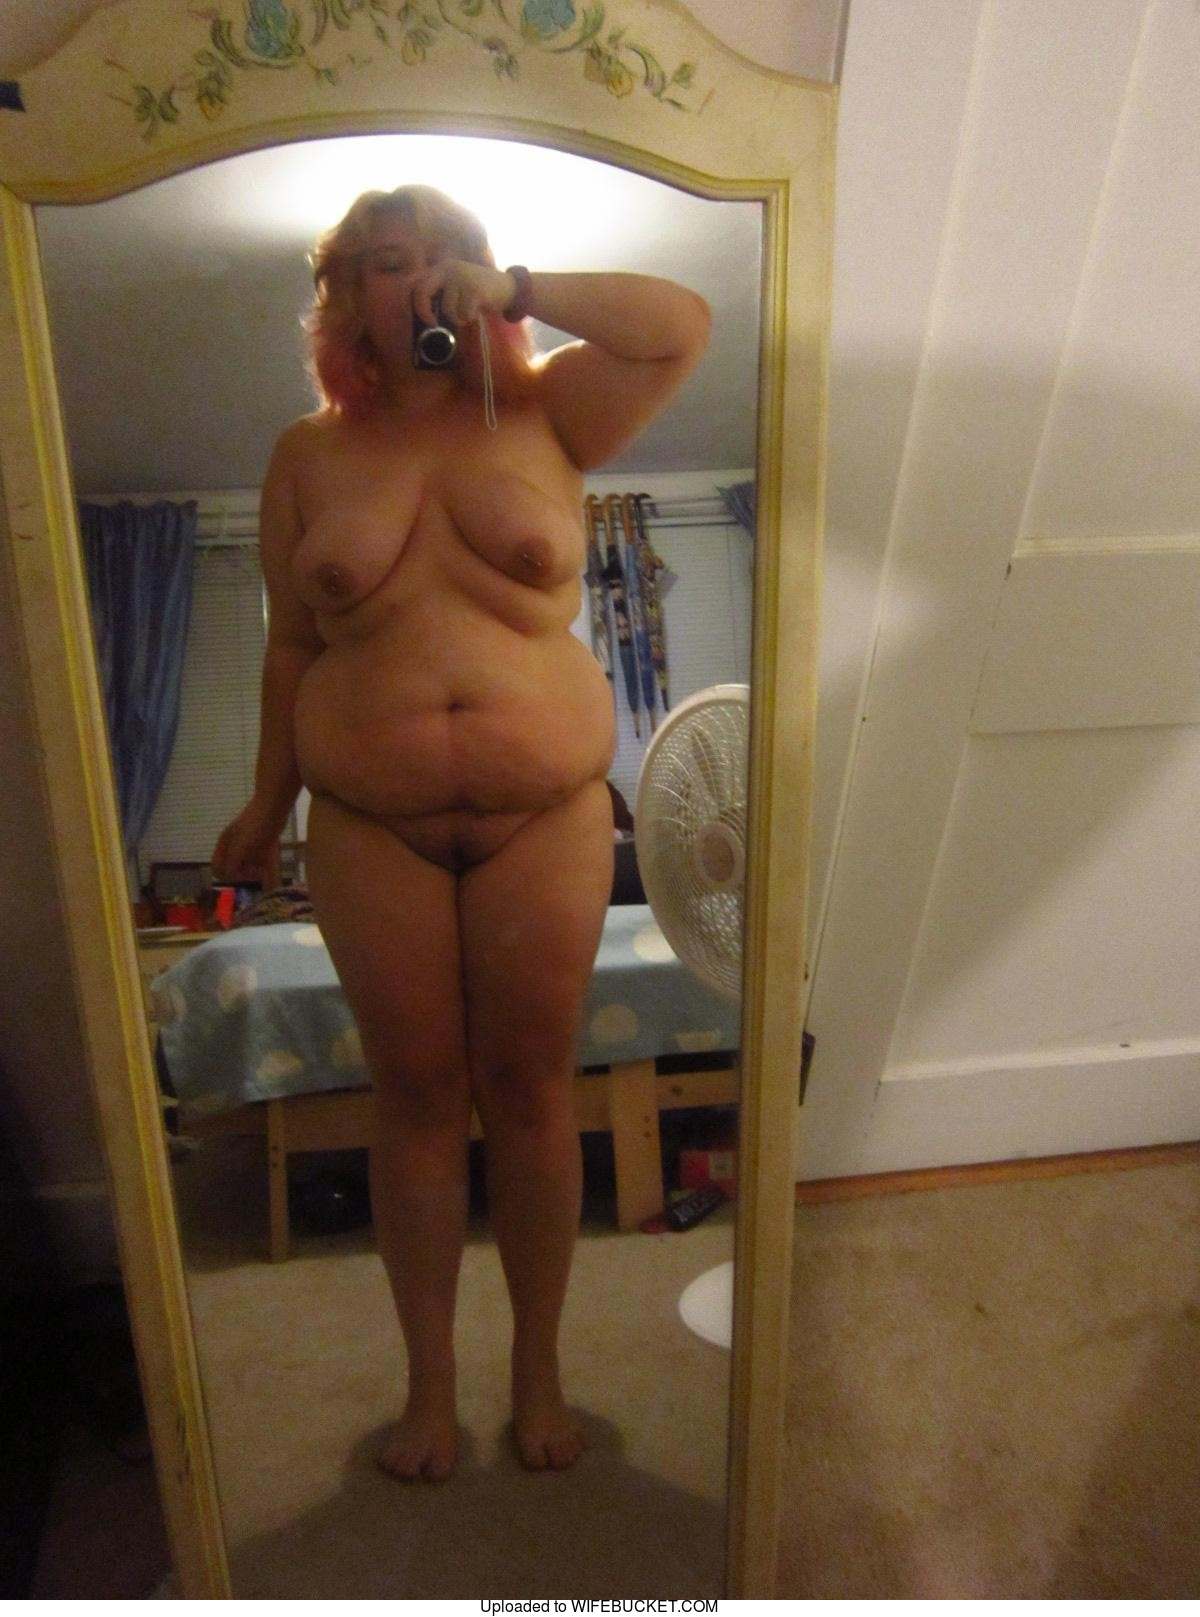 big ass women naked selfie free xxx photo